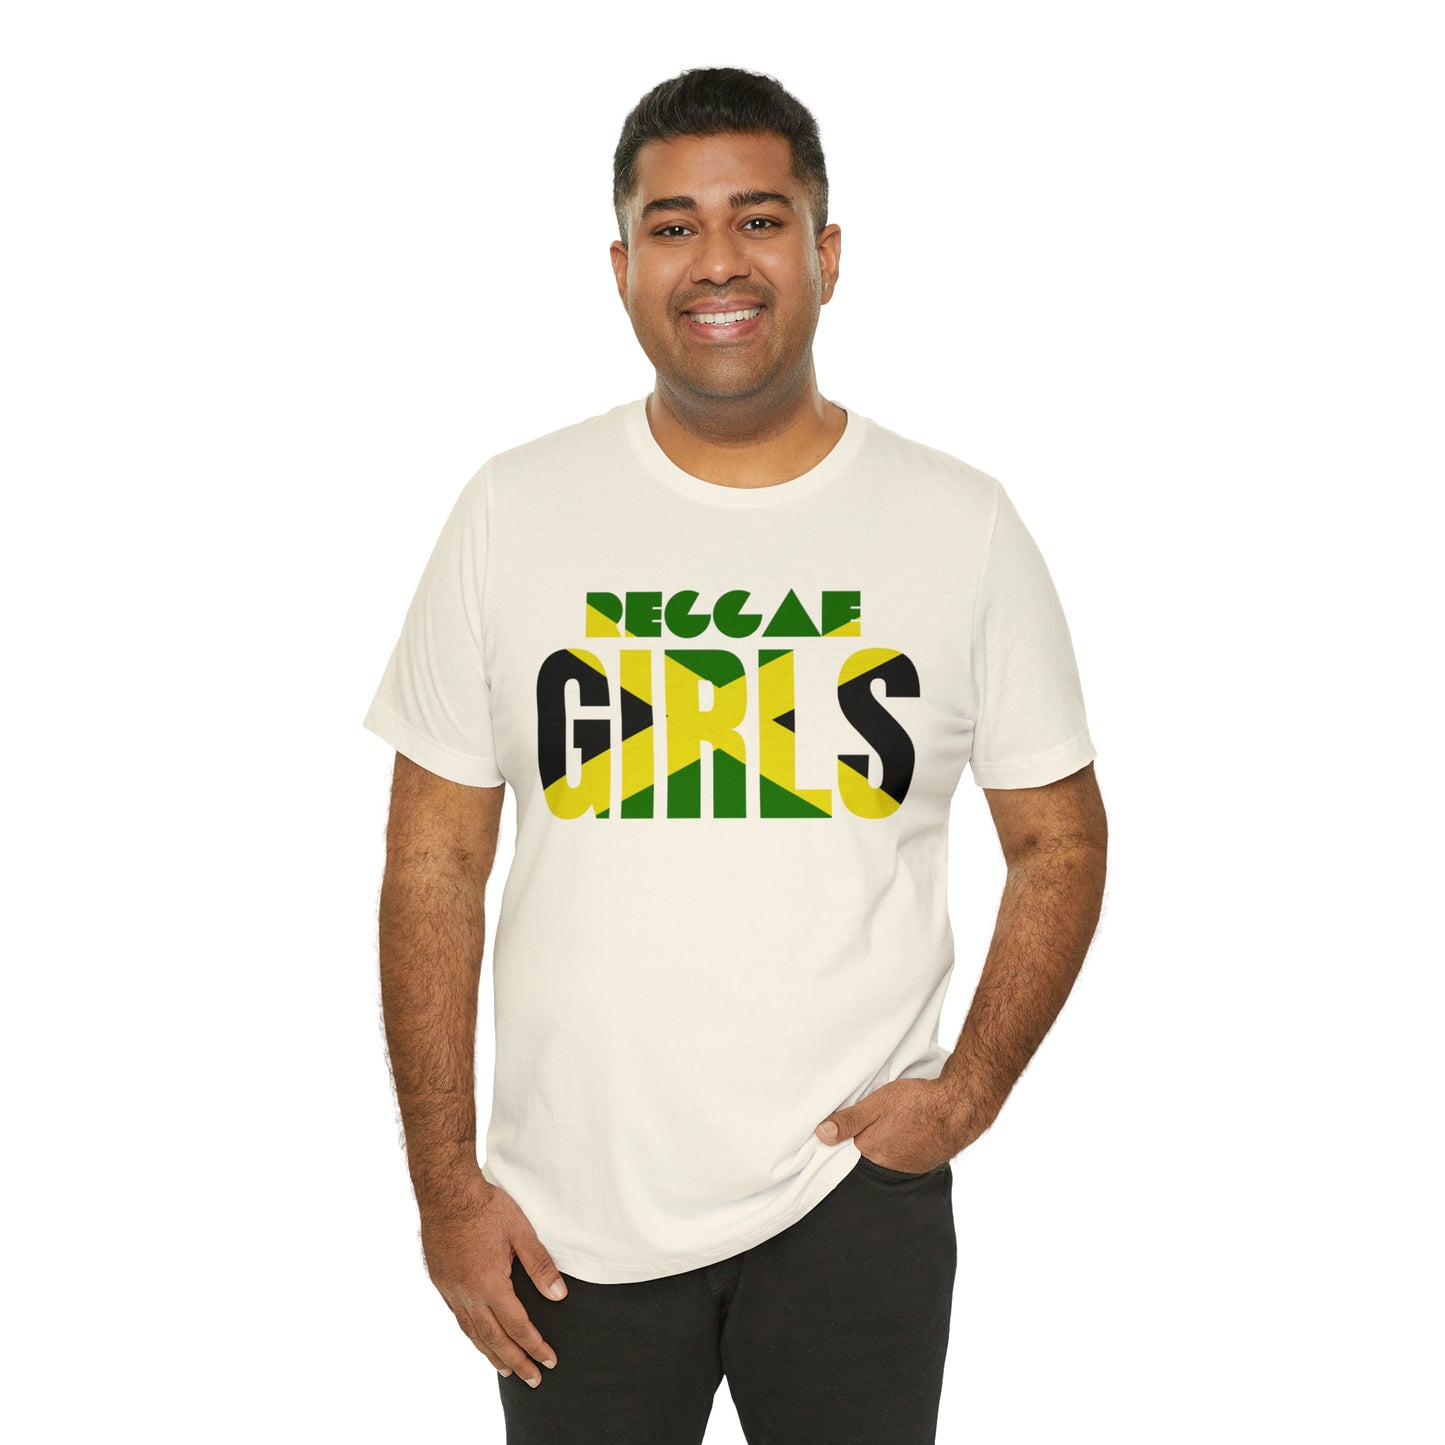 Jamaica Flag Shirt, Reggae Girls Soccer Football T-Shirt, World Cup Shirt, Rasta Flag, Jamaica National Football Team, Women Sports Jersey